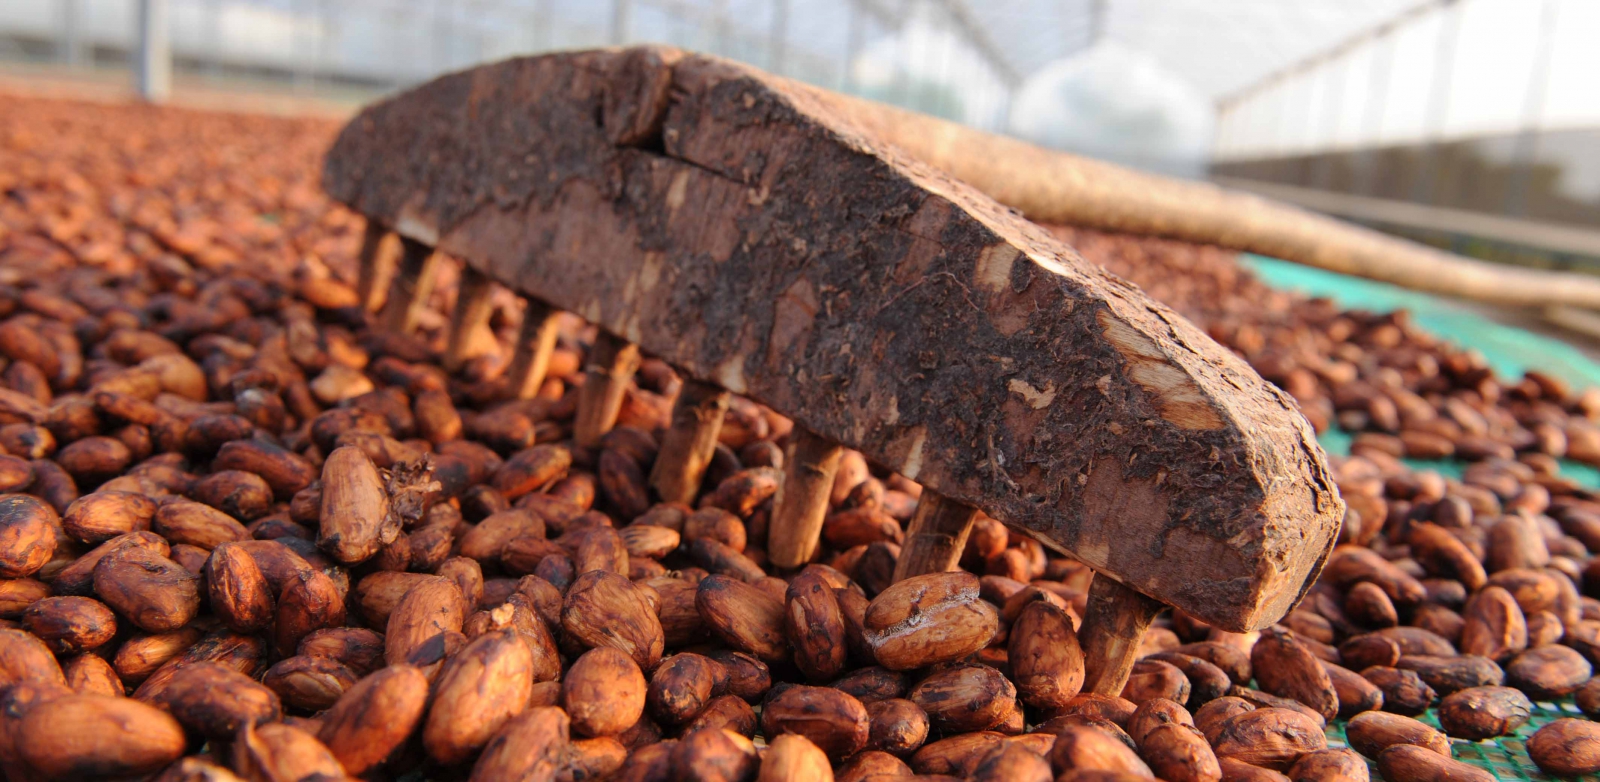 Công ty nào sản xuất Cacao và Chocolate  cho người nước ngoài uy tín hiện nay?